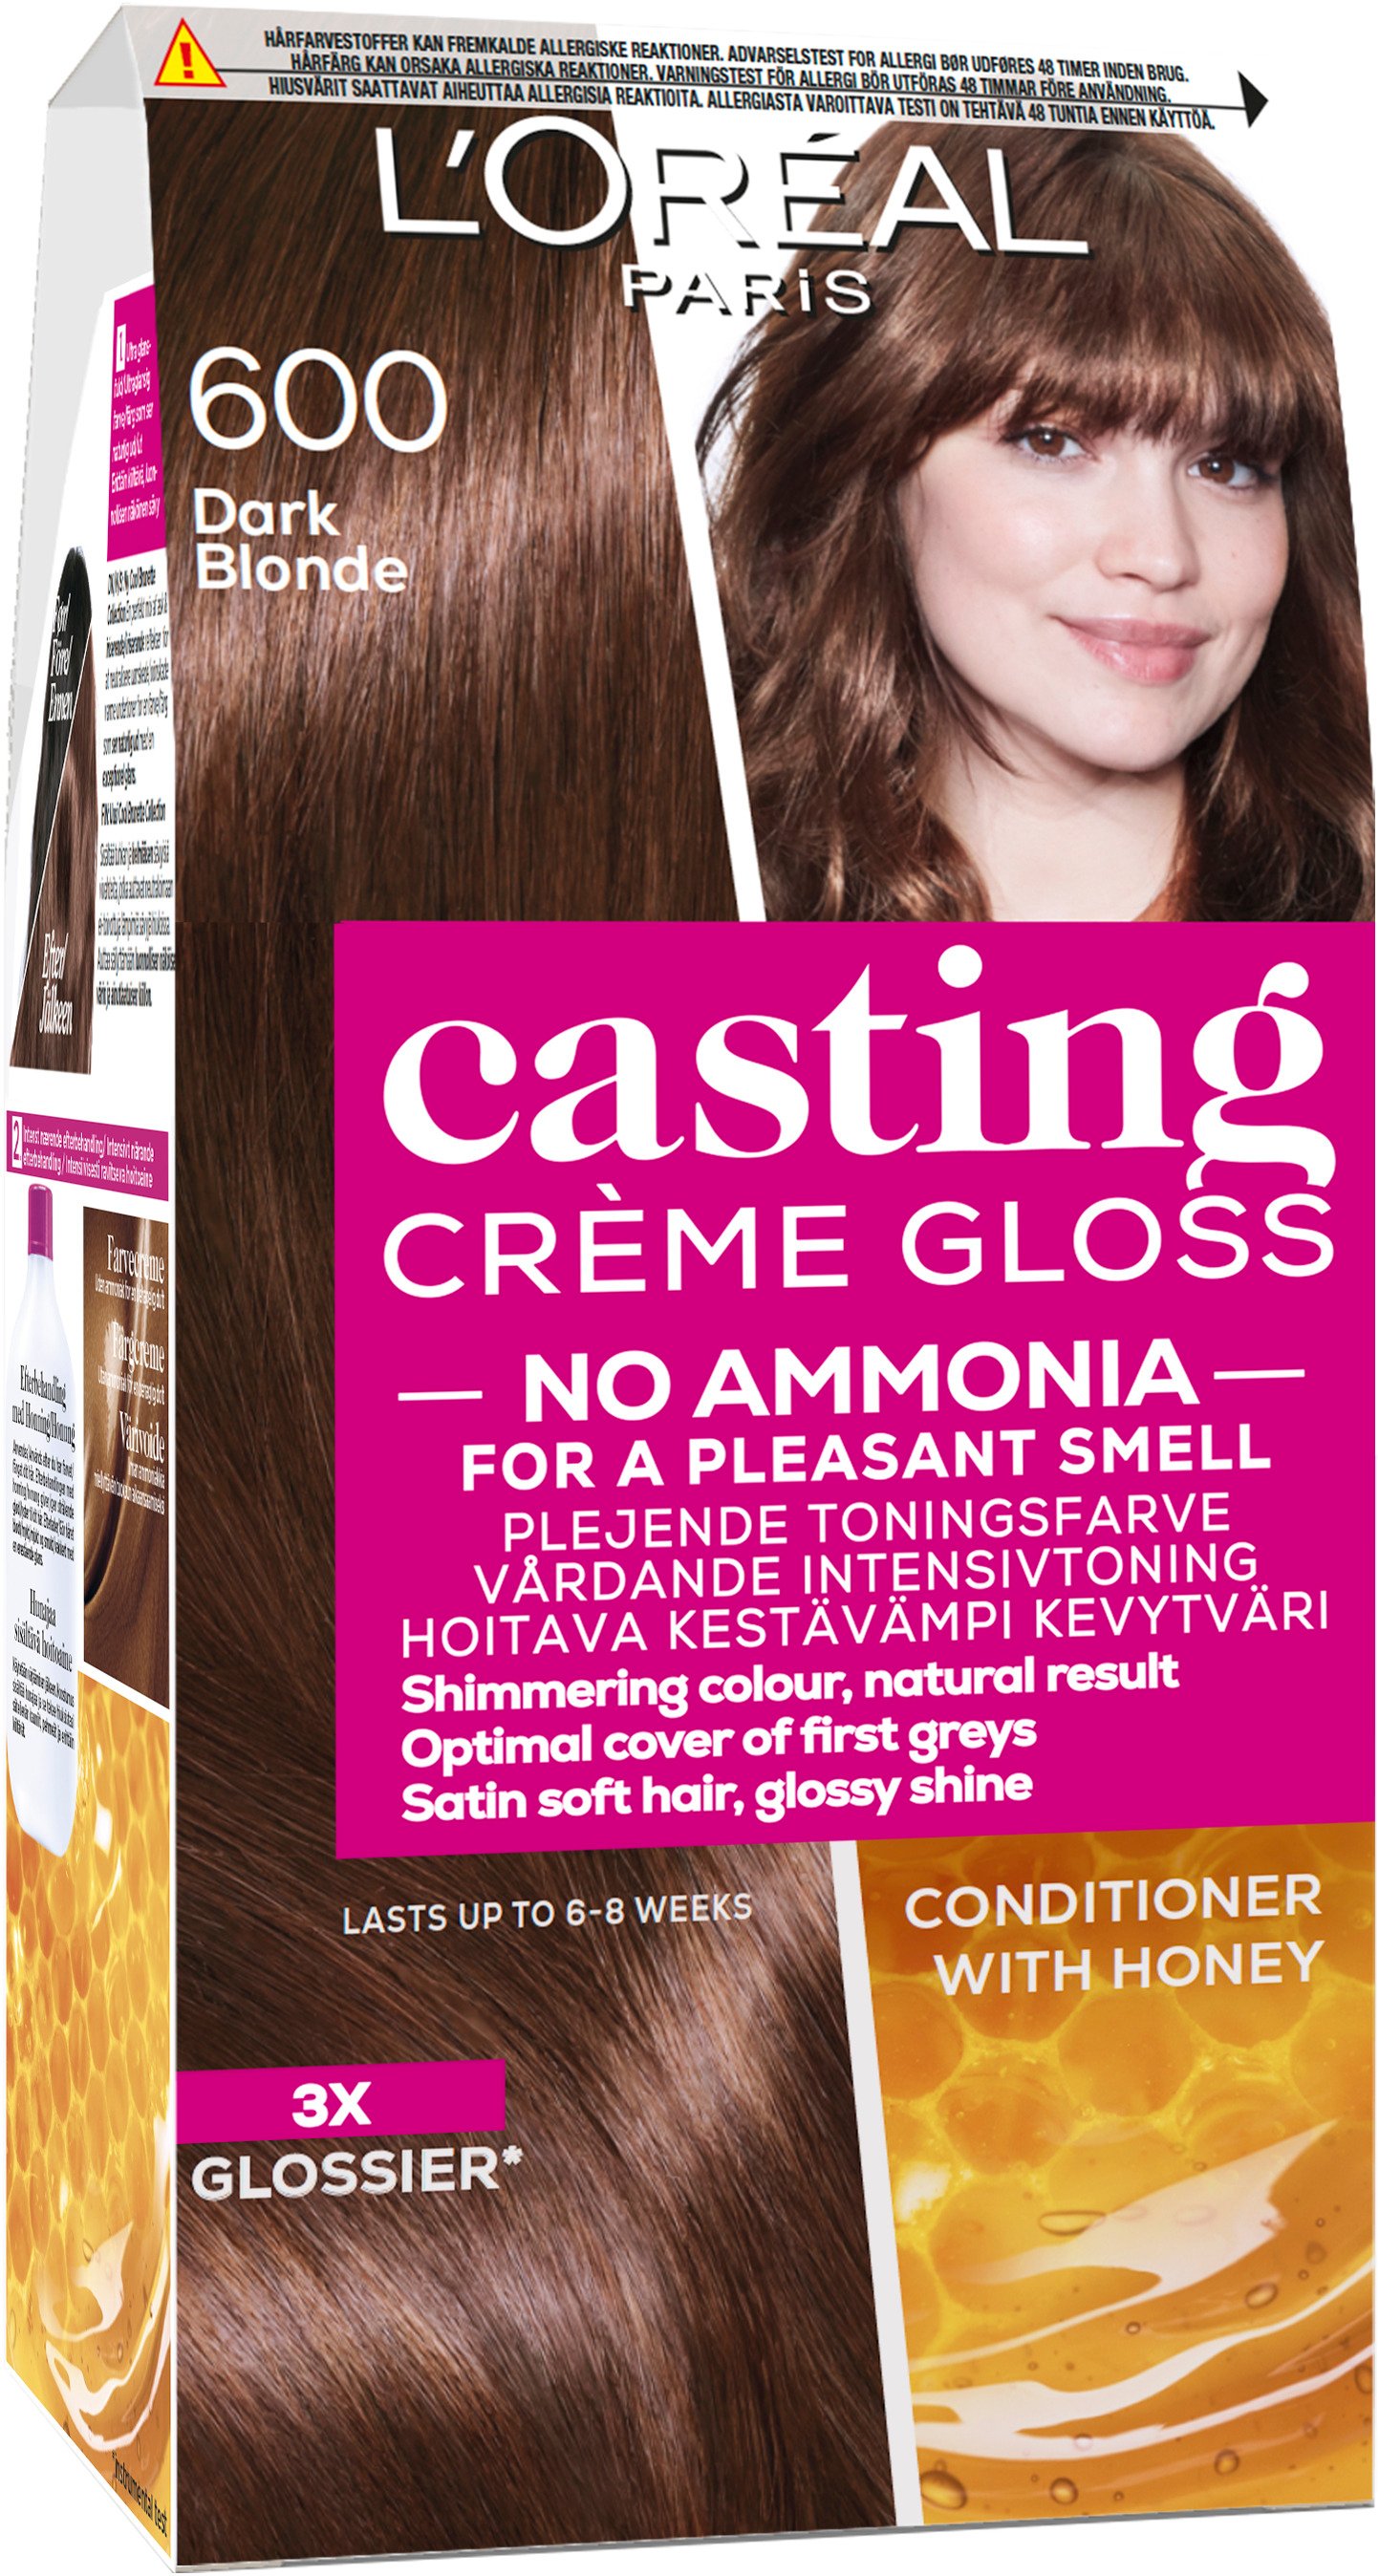 L'Oréal Paris Casting Creme Gloss 600 Dark Blonde